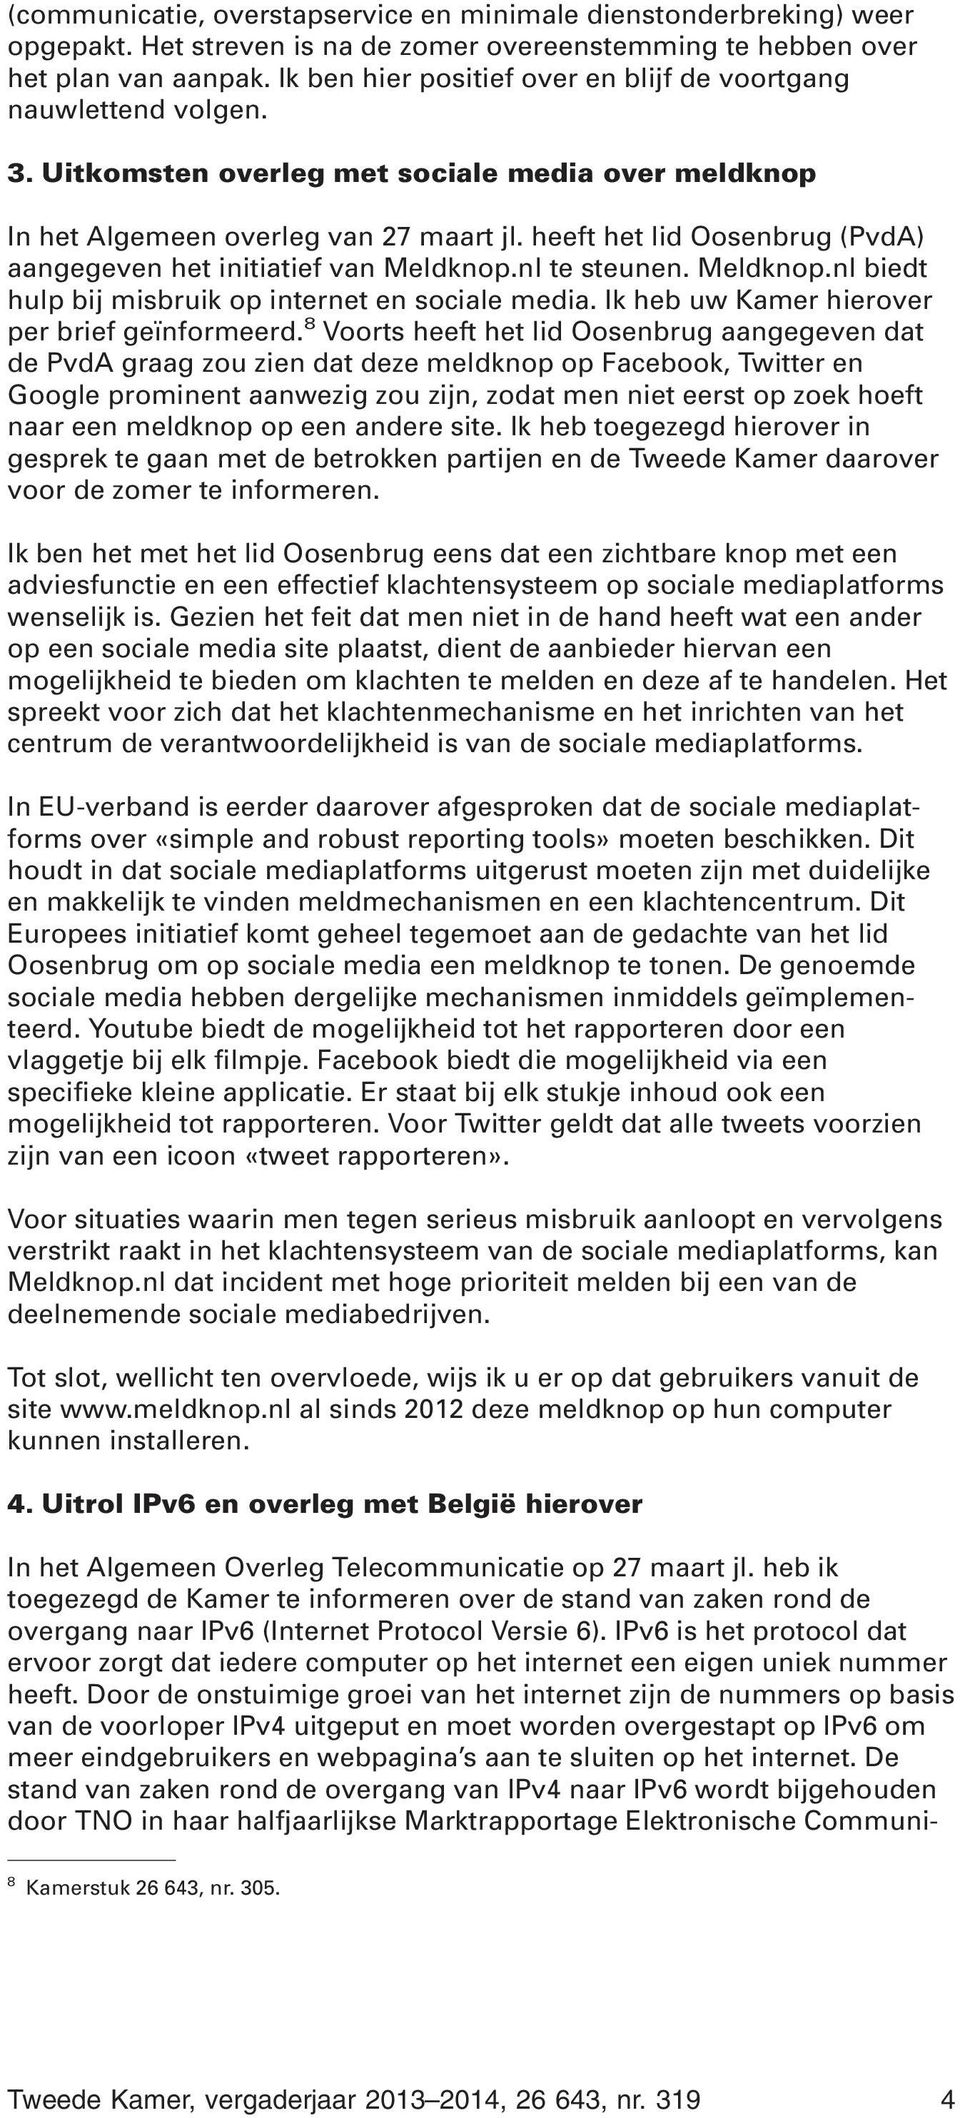 heeft het lid Oosenbrug (PvdA) aangegeven het initiatief van Meldknop.nl te steunen. Meldknop.nl biedt hulp bij misbruik op internet en sociale media. Ik heb uw Kamer hierover per brief geïnformeerd.